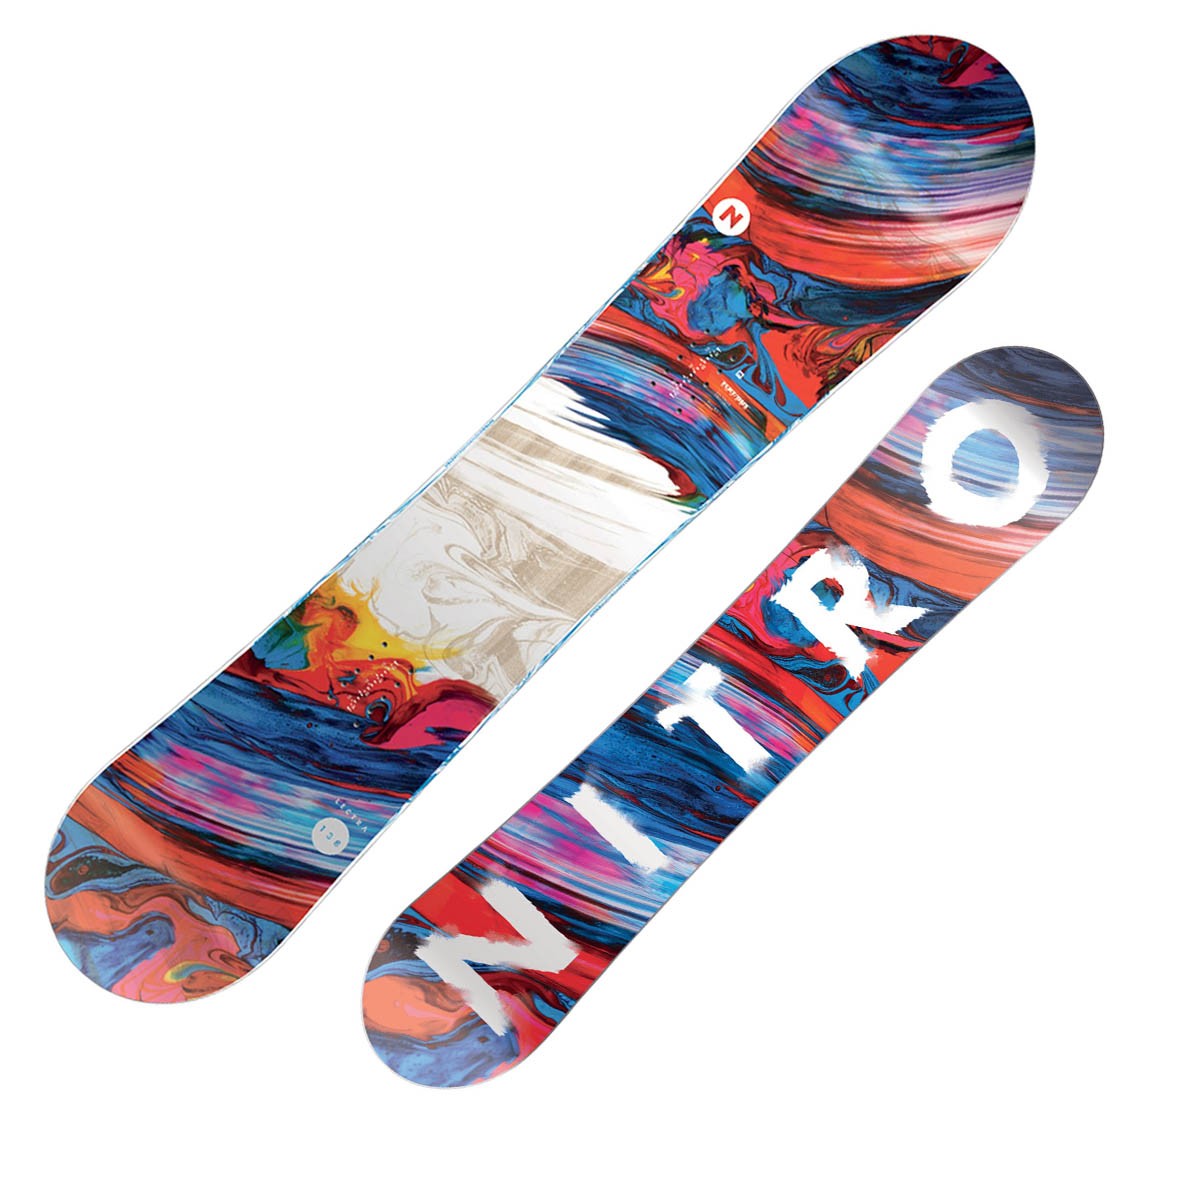  Snowboard Nitro Lectra rental (Colore: rosso-blu-bianco, Taglia: 146) 